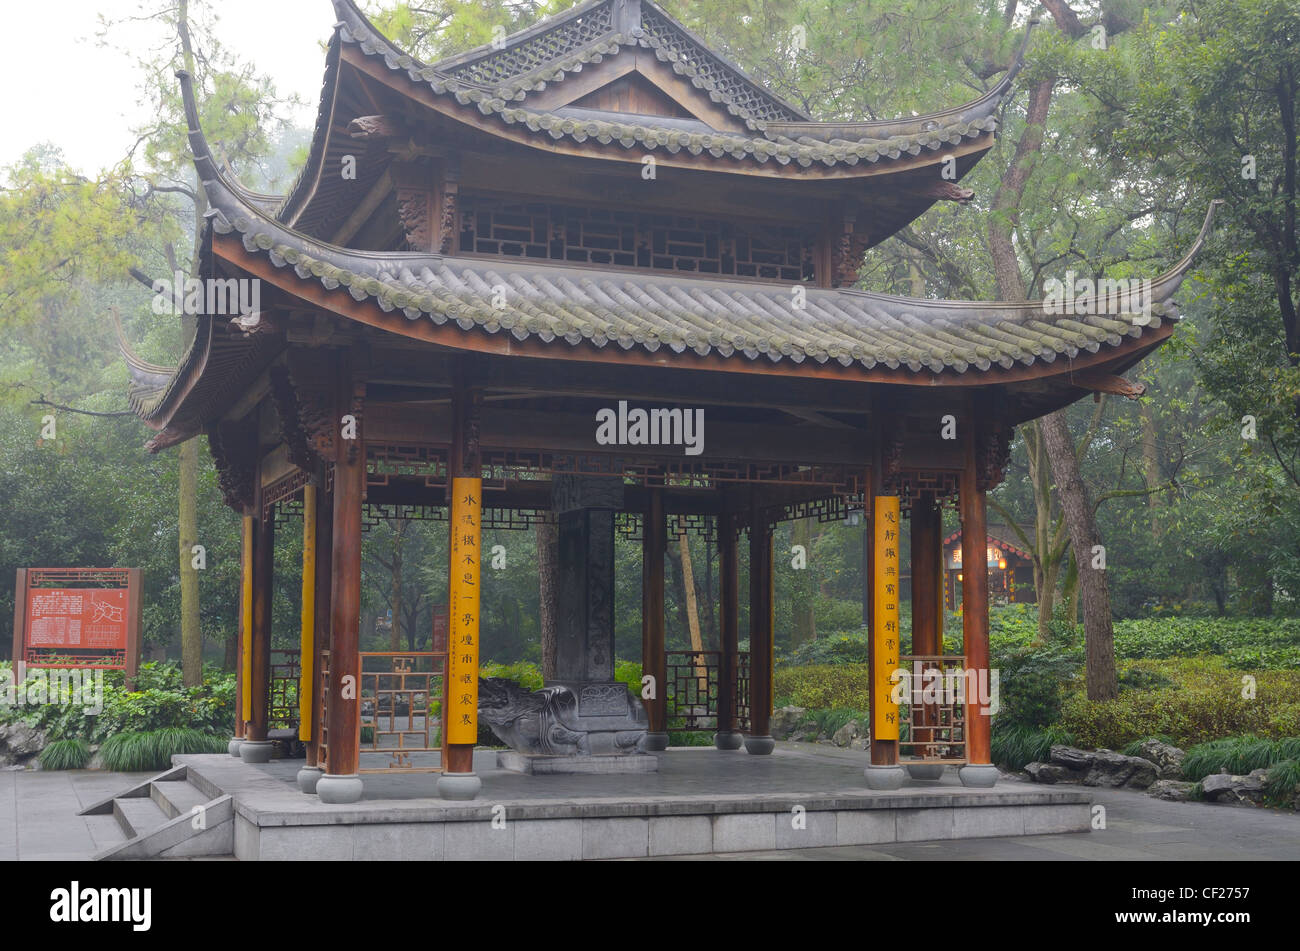 Pagoda con tortugas de piedra debajo de la columna en el templo de Lingyin park Hangzhou, República Popular de China Foto de stock